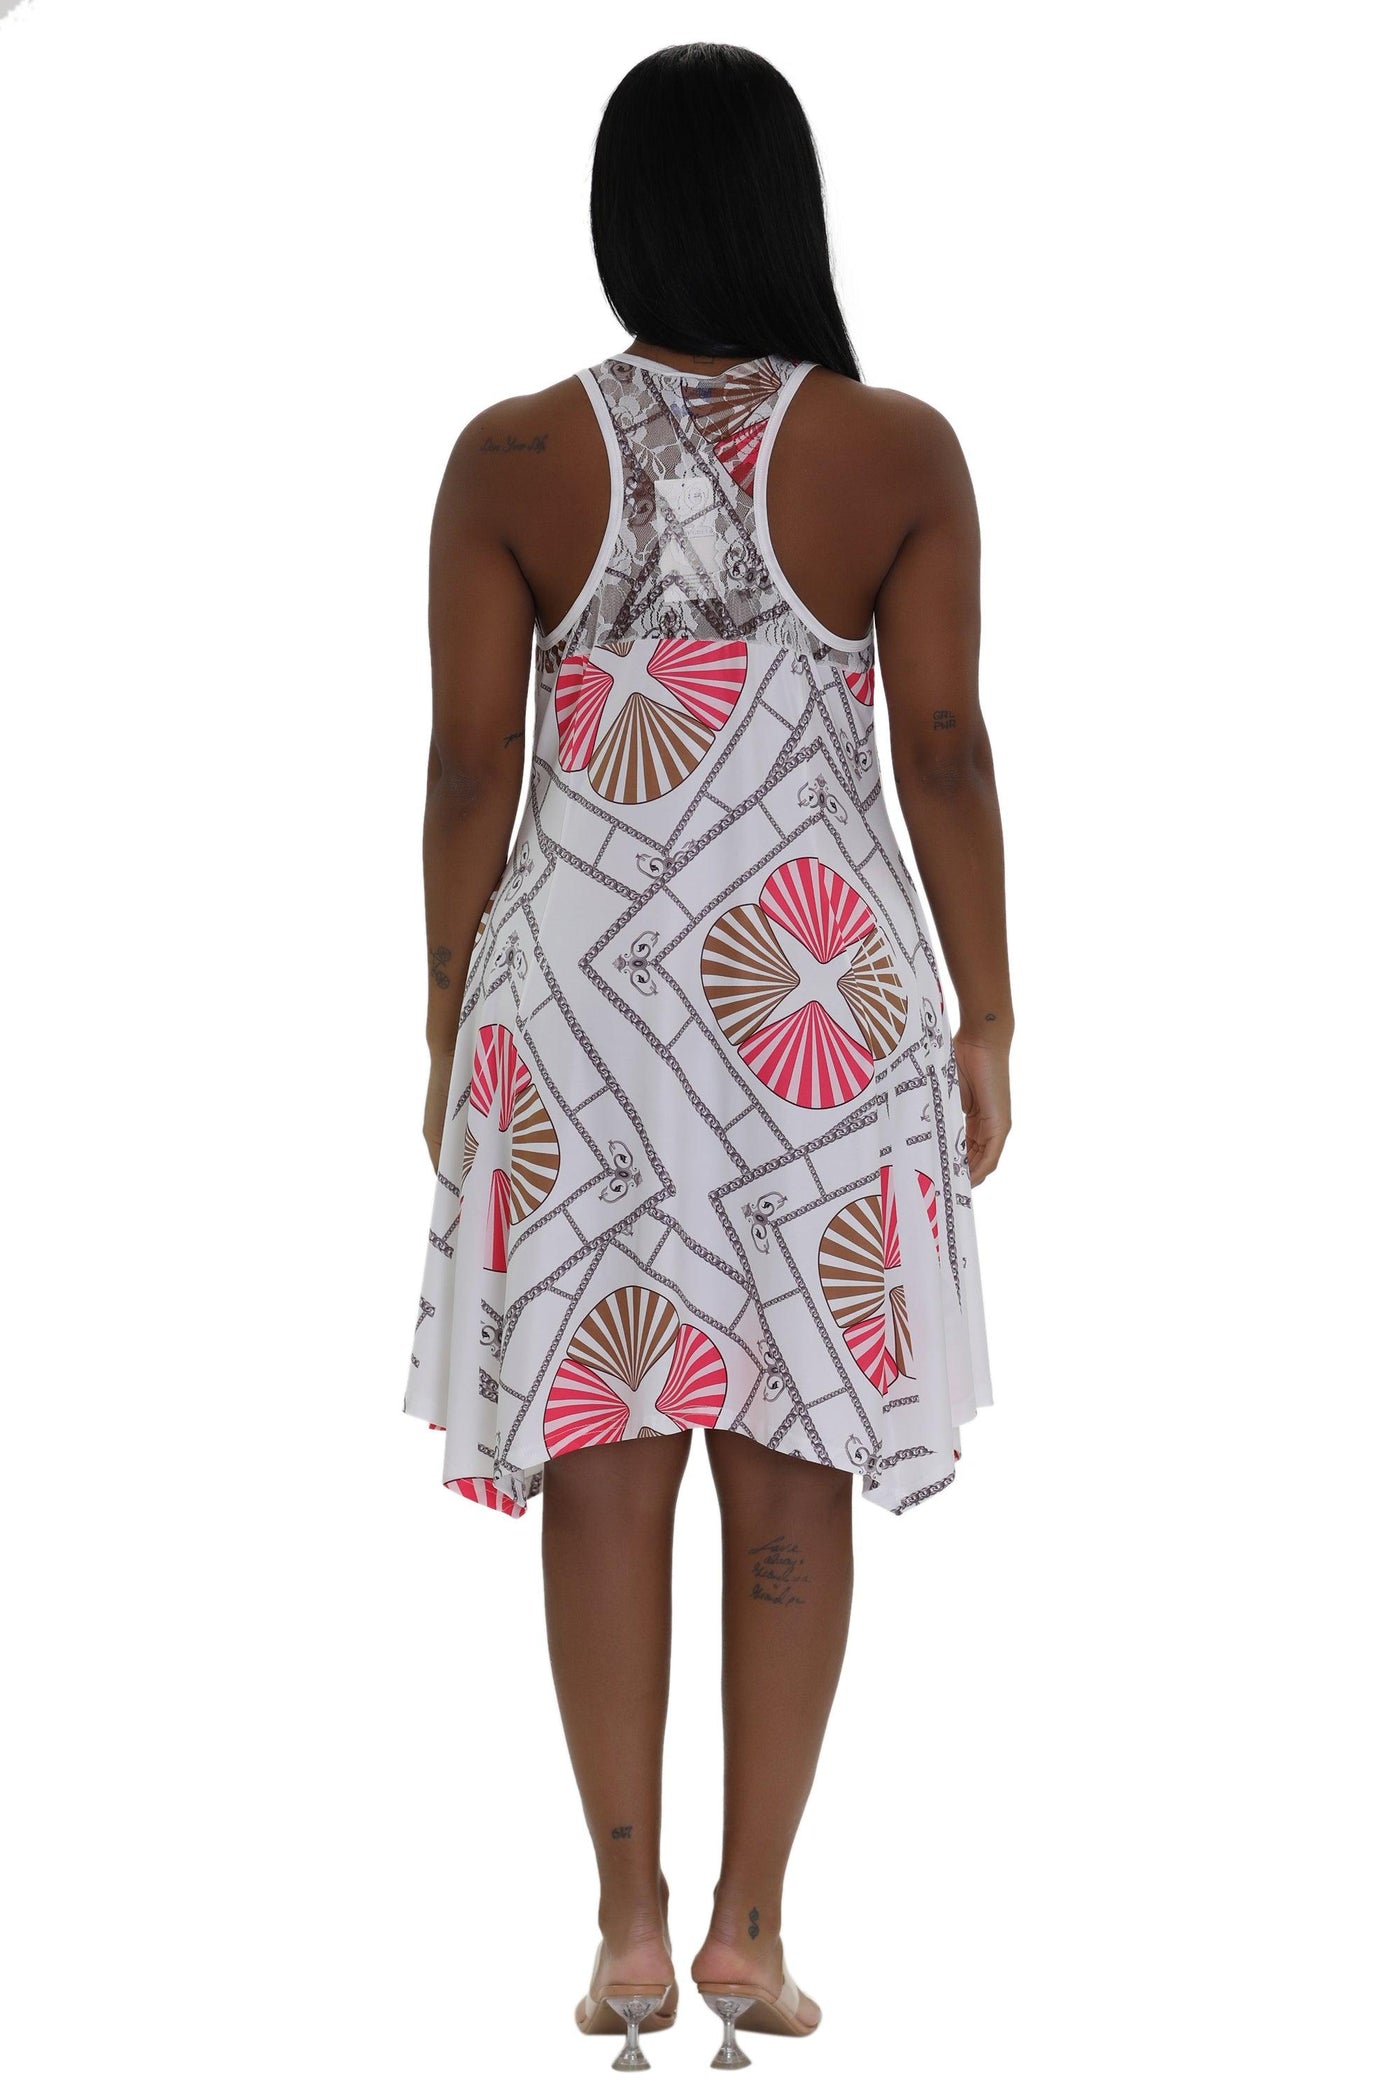 Seashell Print Resort Dress 21227  - Advance Apparels Inc